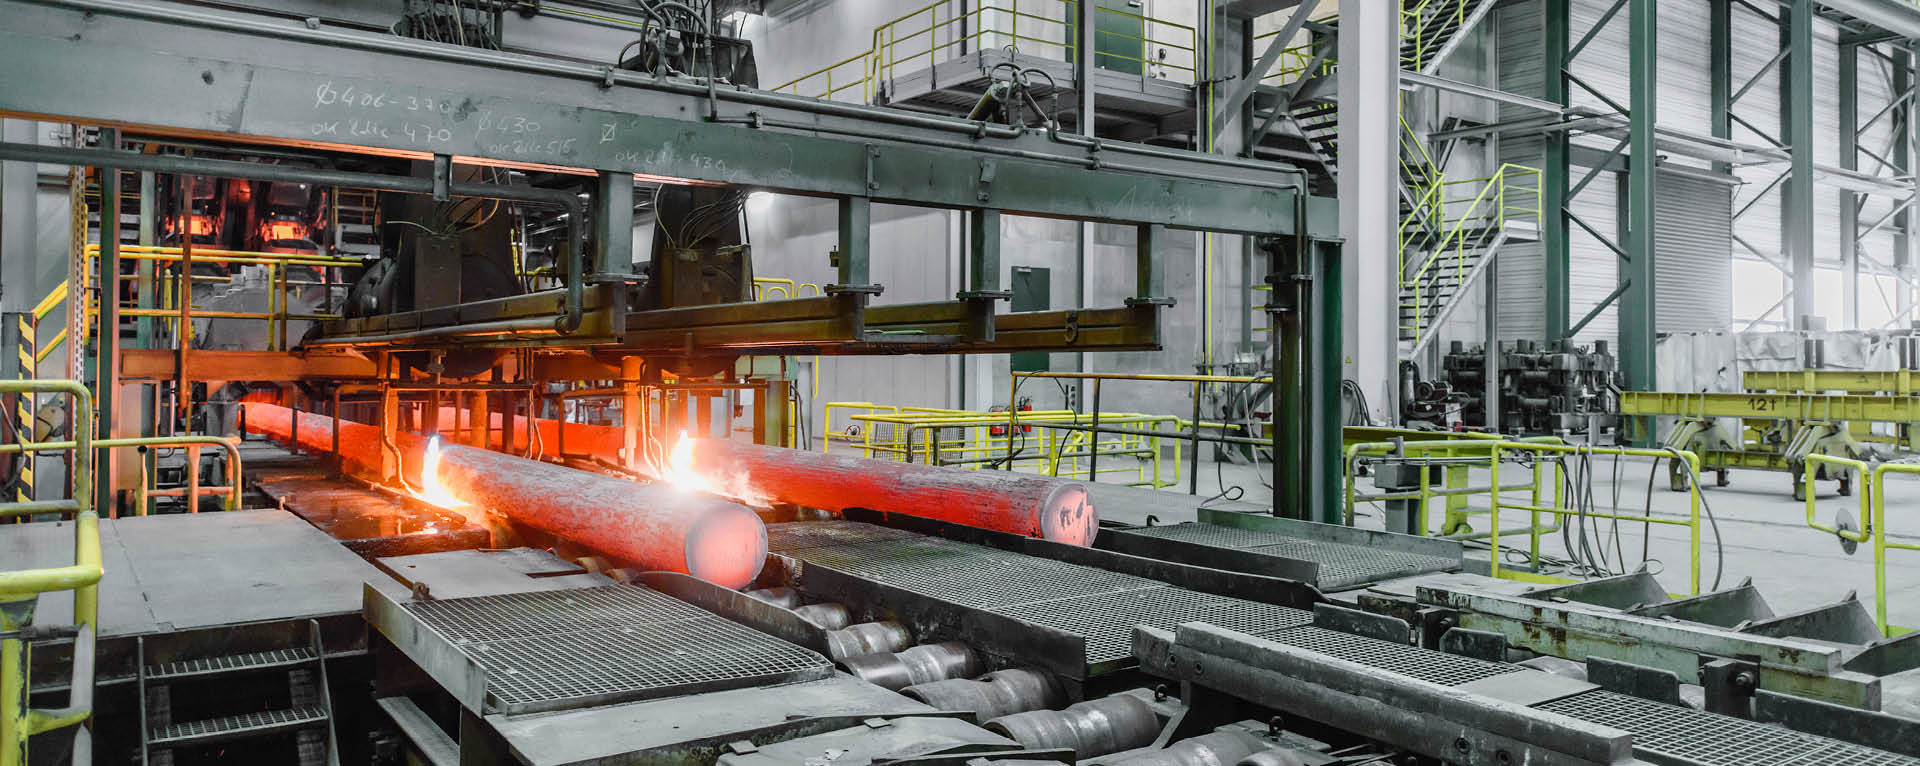 Stahlwerk Bous GmbH